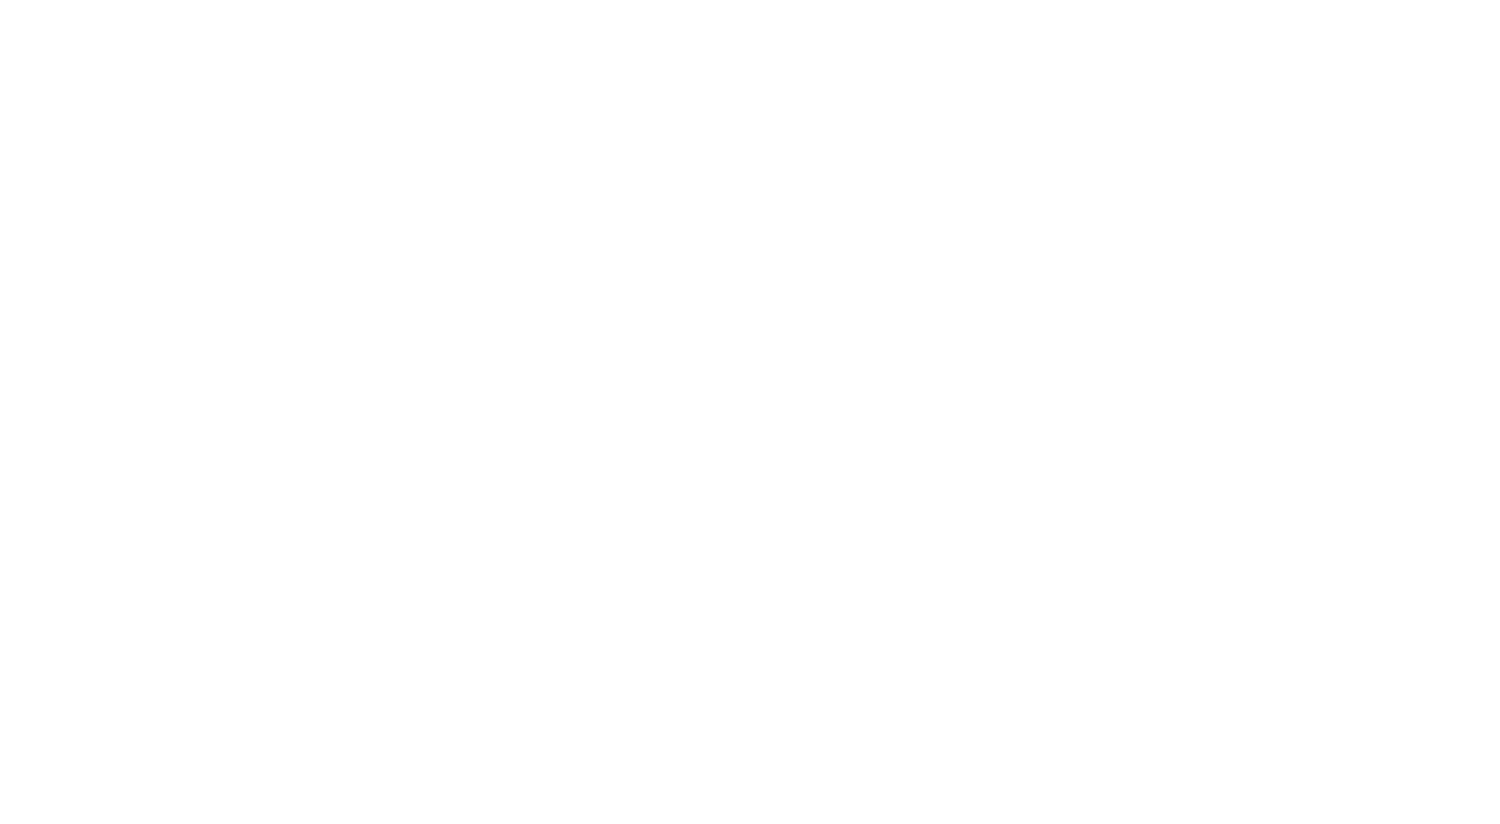 Build Conferences